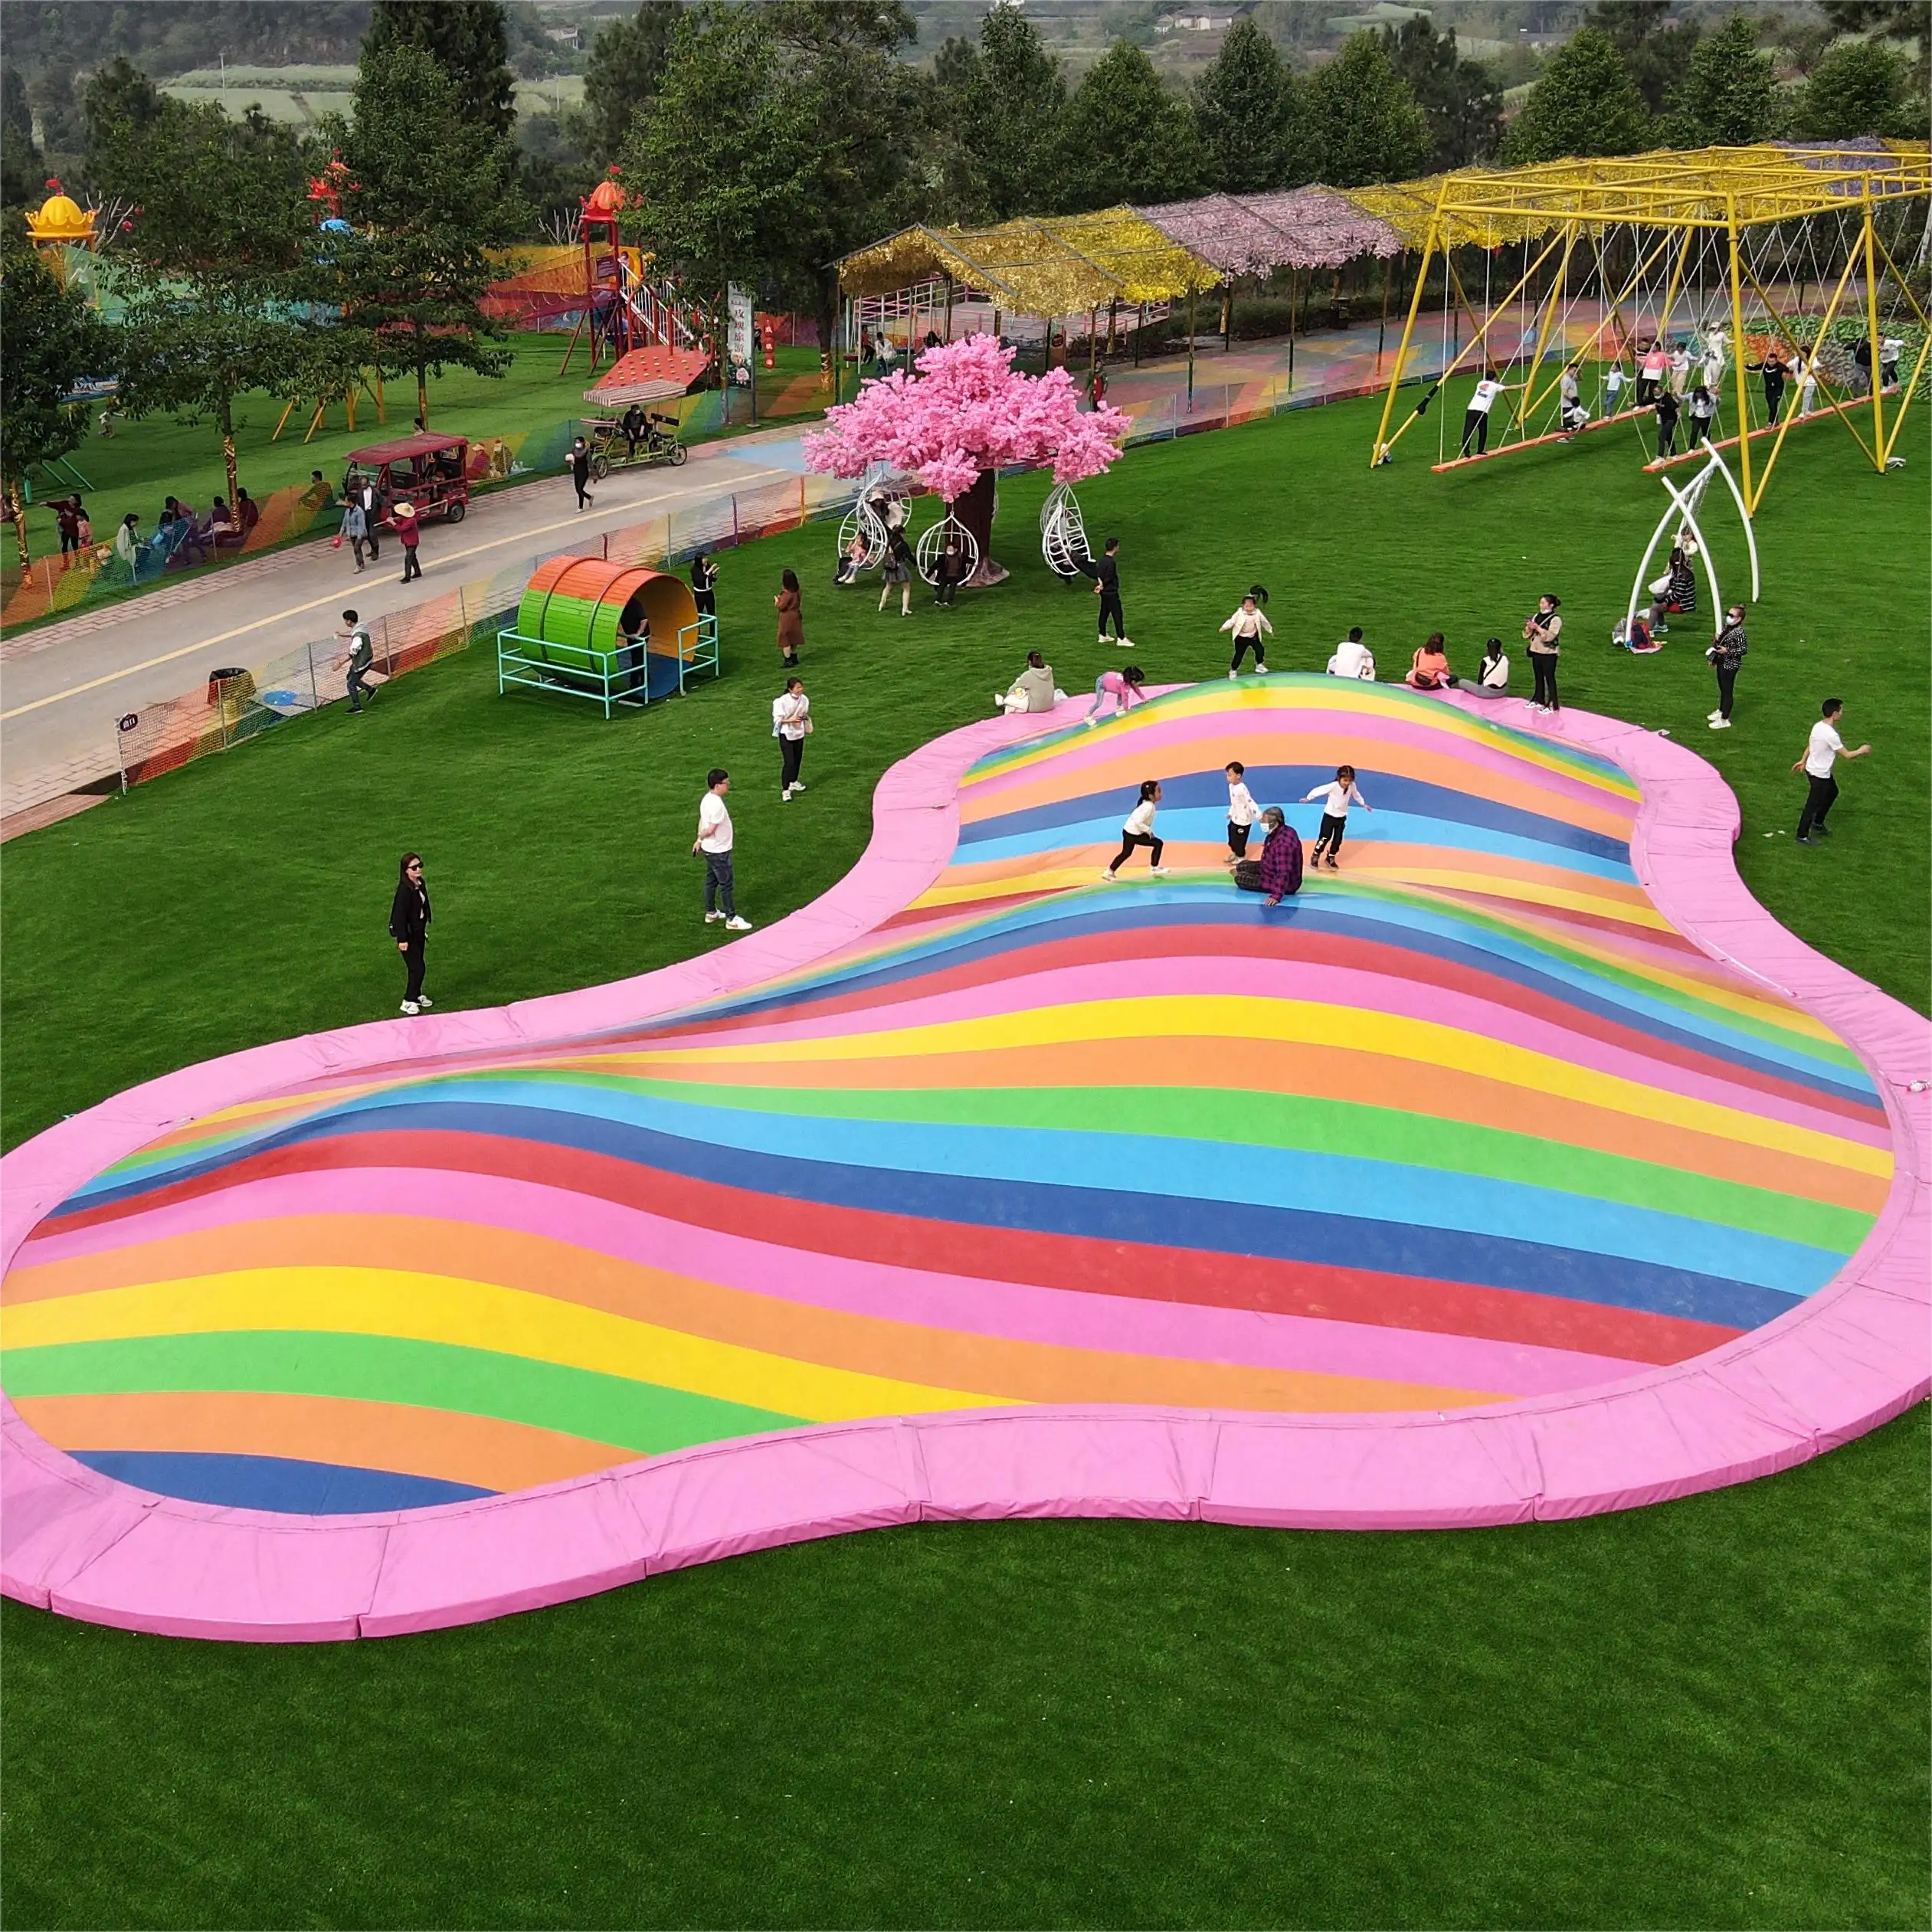 ANXIN Patent Aufblasbares Themenpark Regenbogen springen Wolke aufblasbares Sprung kissen